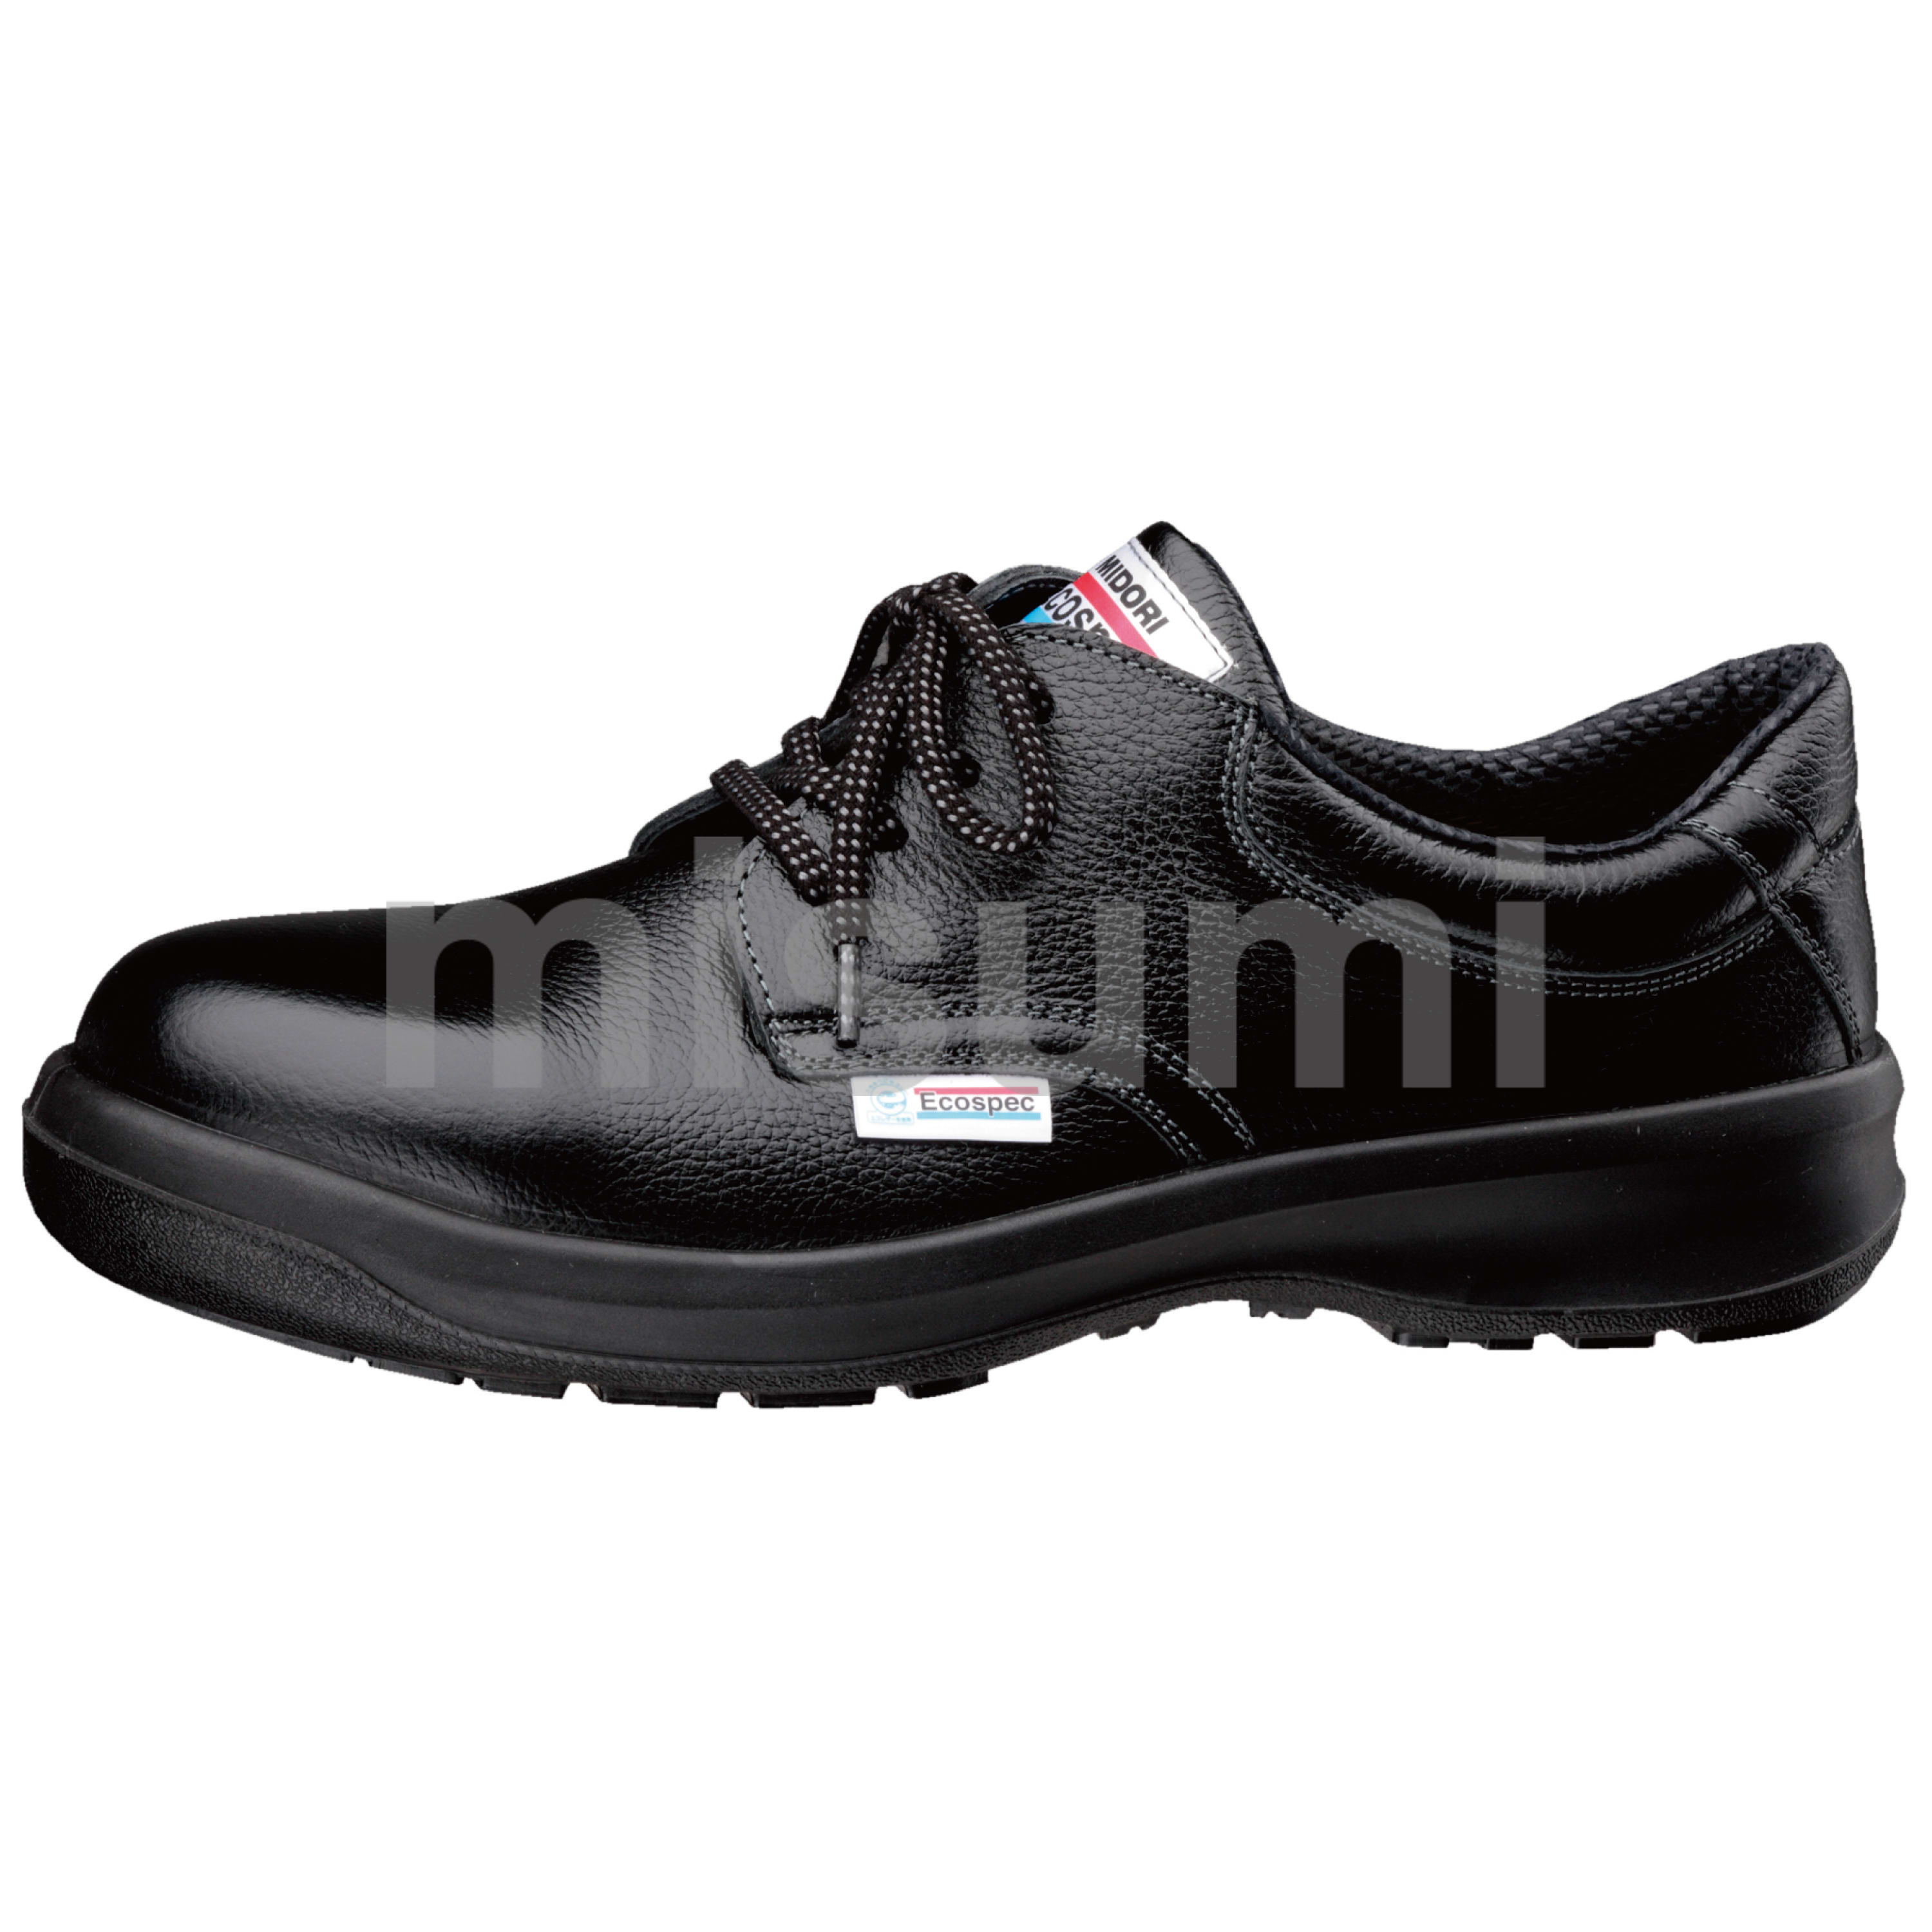 エコマーク認定 静電安全靴 エコスペック ESG3210 eco ブラック ミドリ安全 MISUMI(ミスミ)